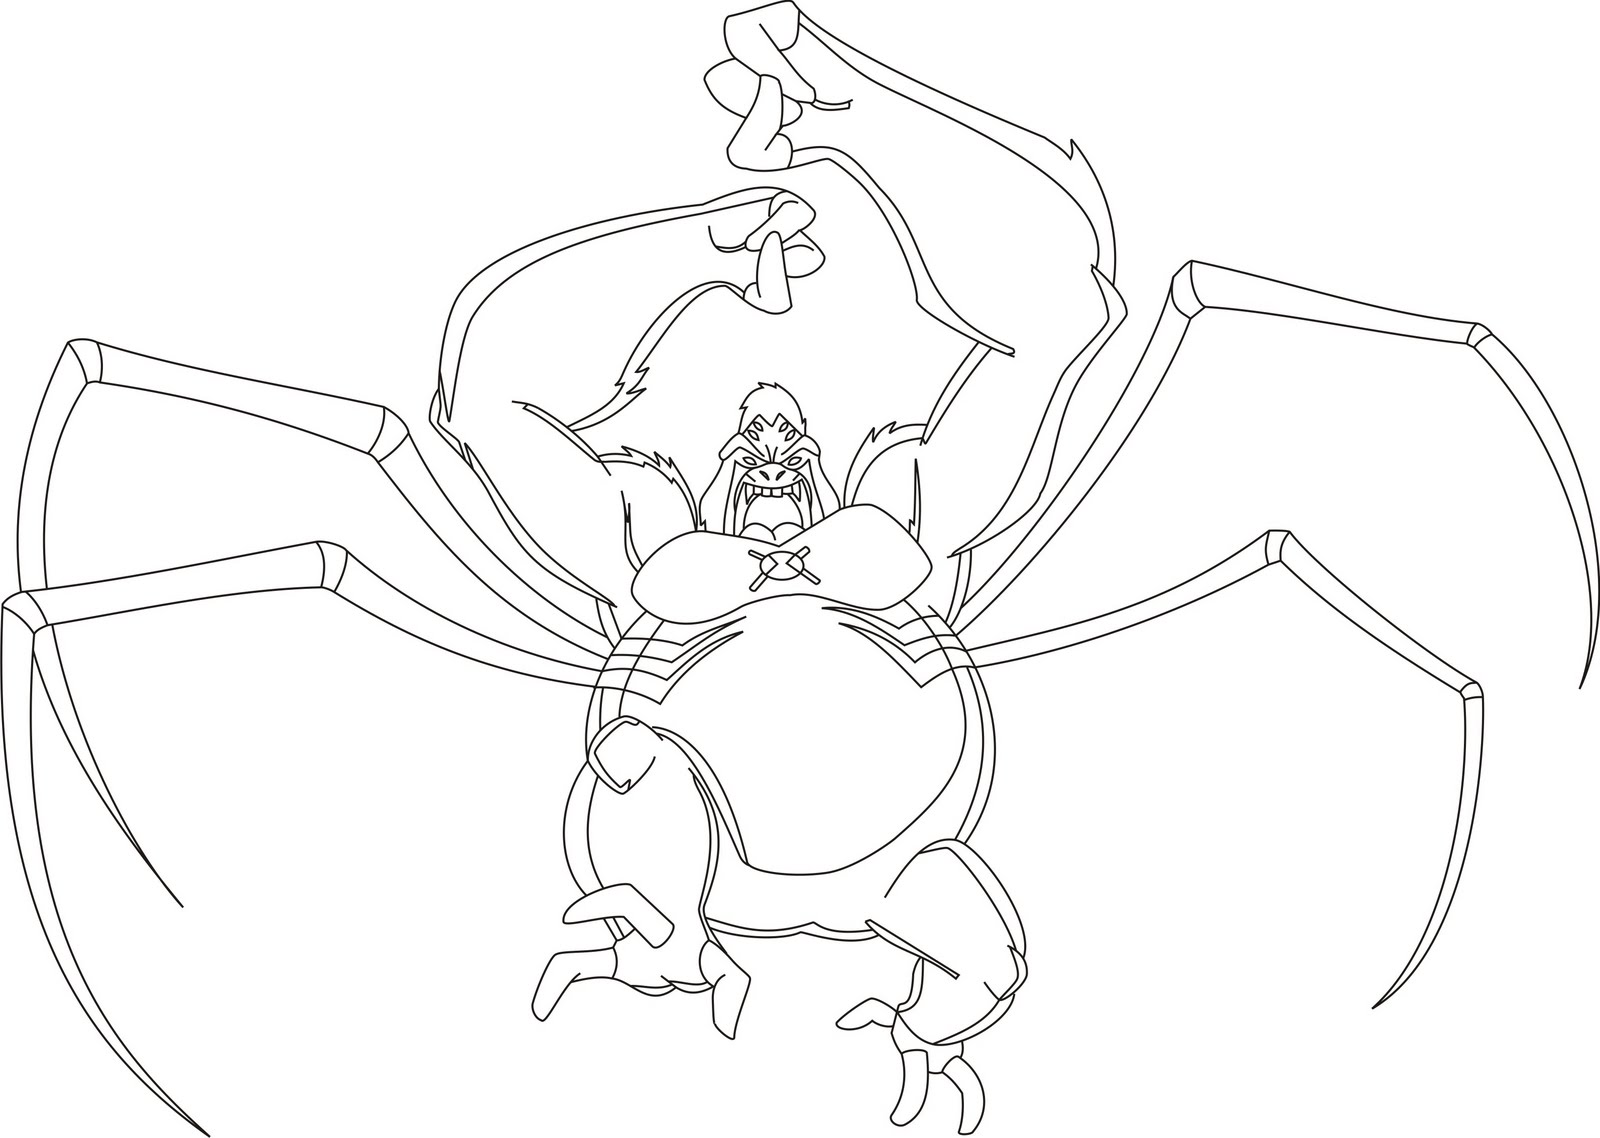 Image - Spider Monkey Sketch. 